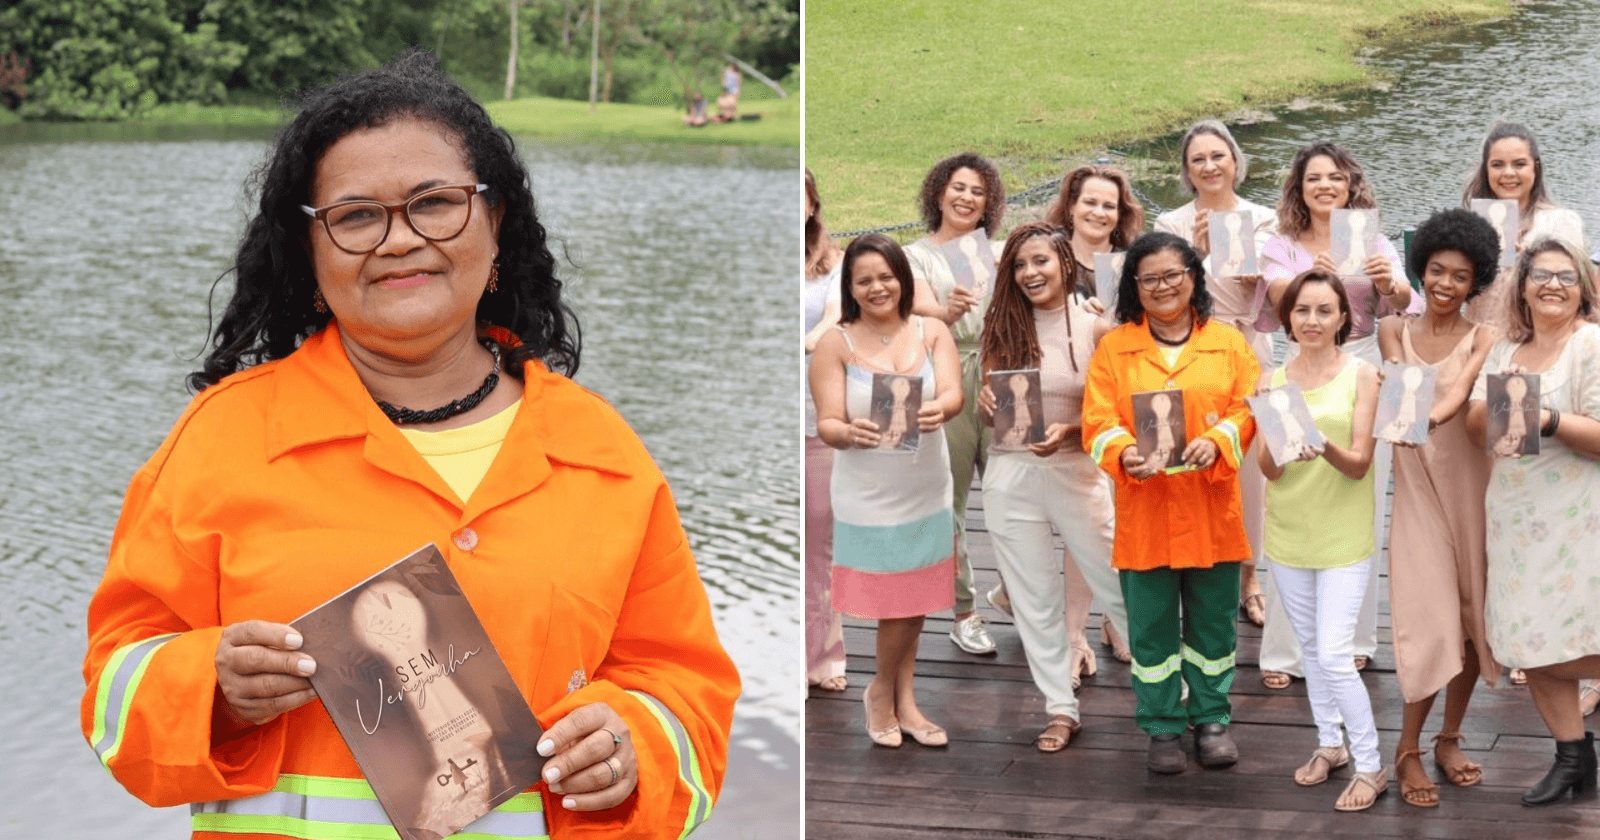 Gari se torna inspiração brasileira ao lançar livro tocante sobre superação feminina